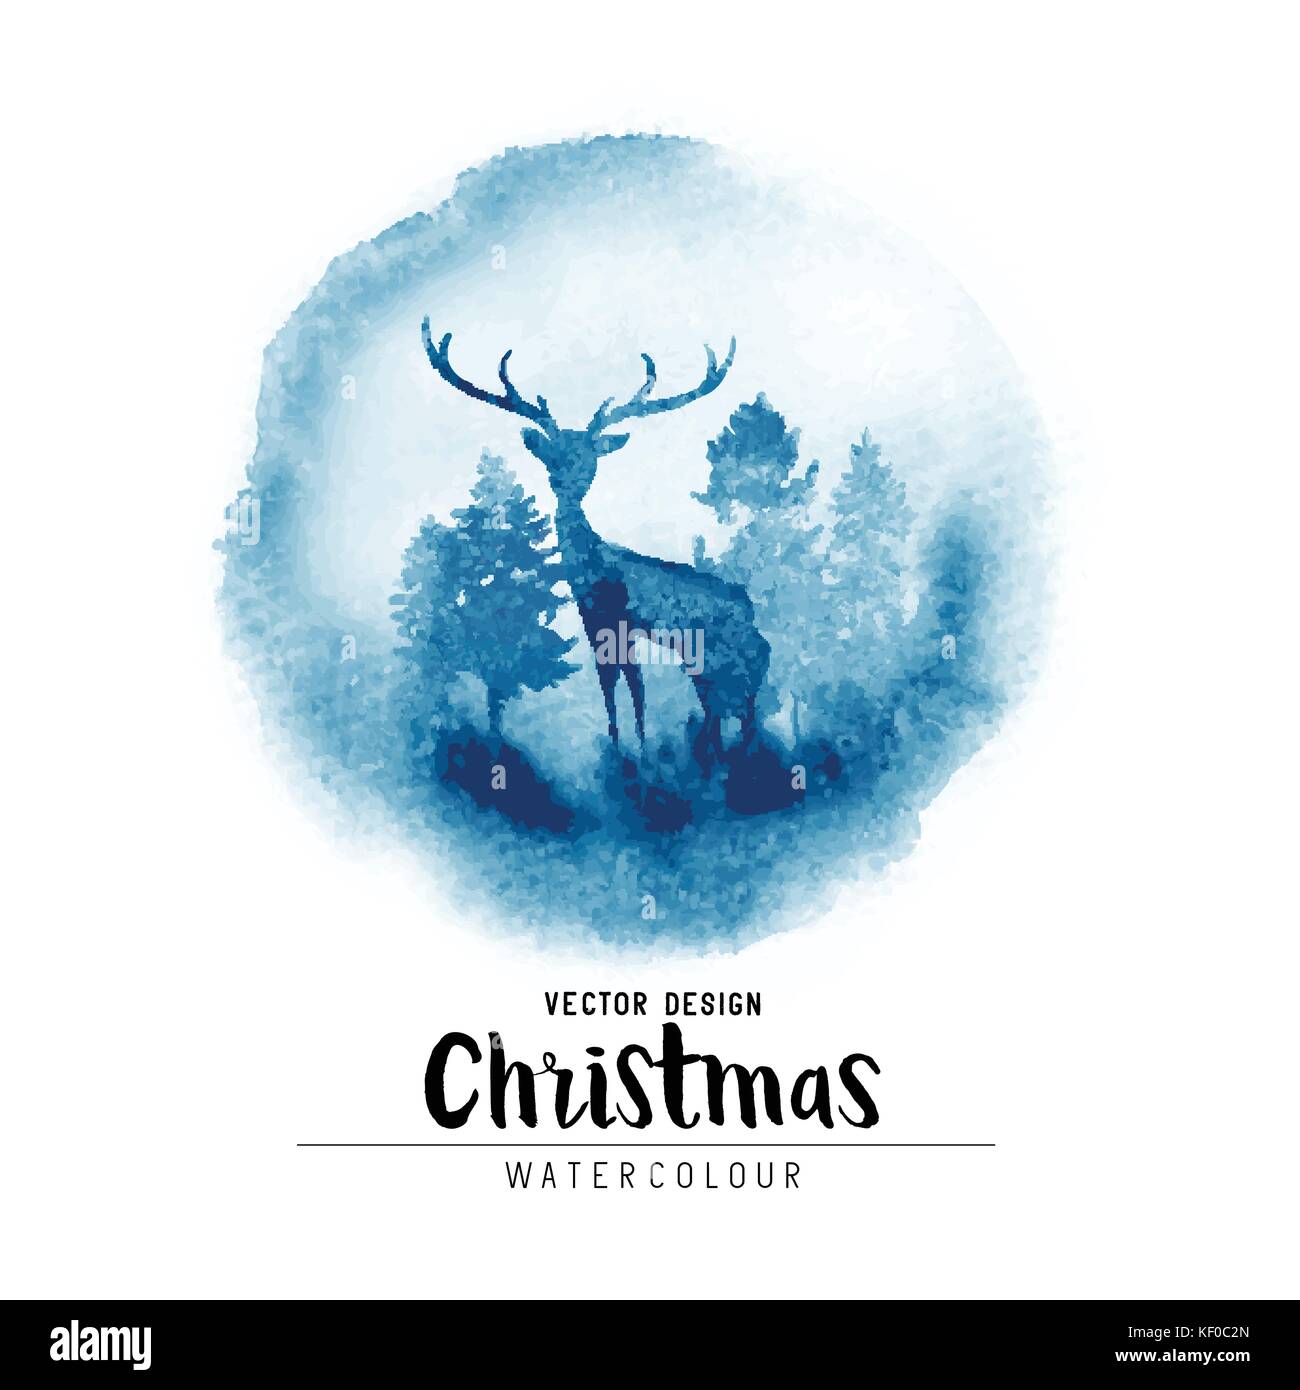 Ein Winter Weihnachten aquarell Szene mit Weihnachtsbäumen und ein Hirsch. Vektor Weihnachten Dekoration Abbildung. Stock Vektor